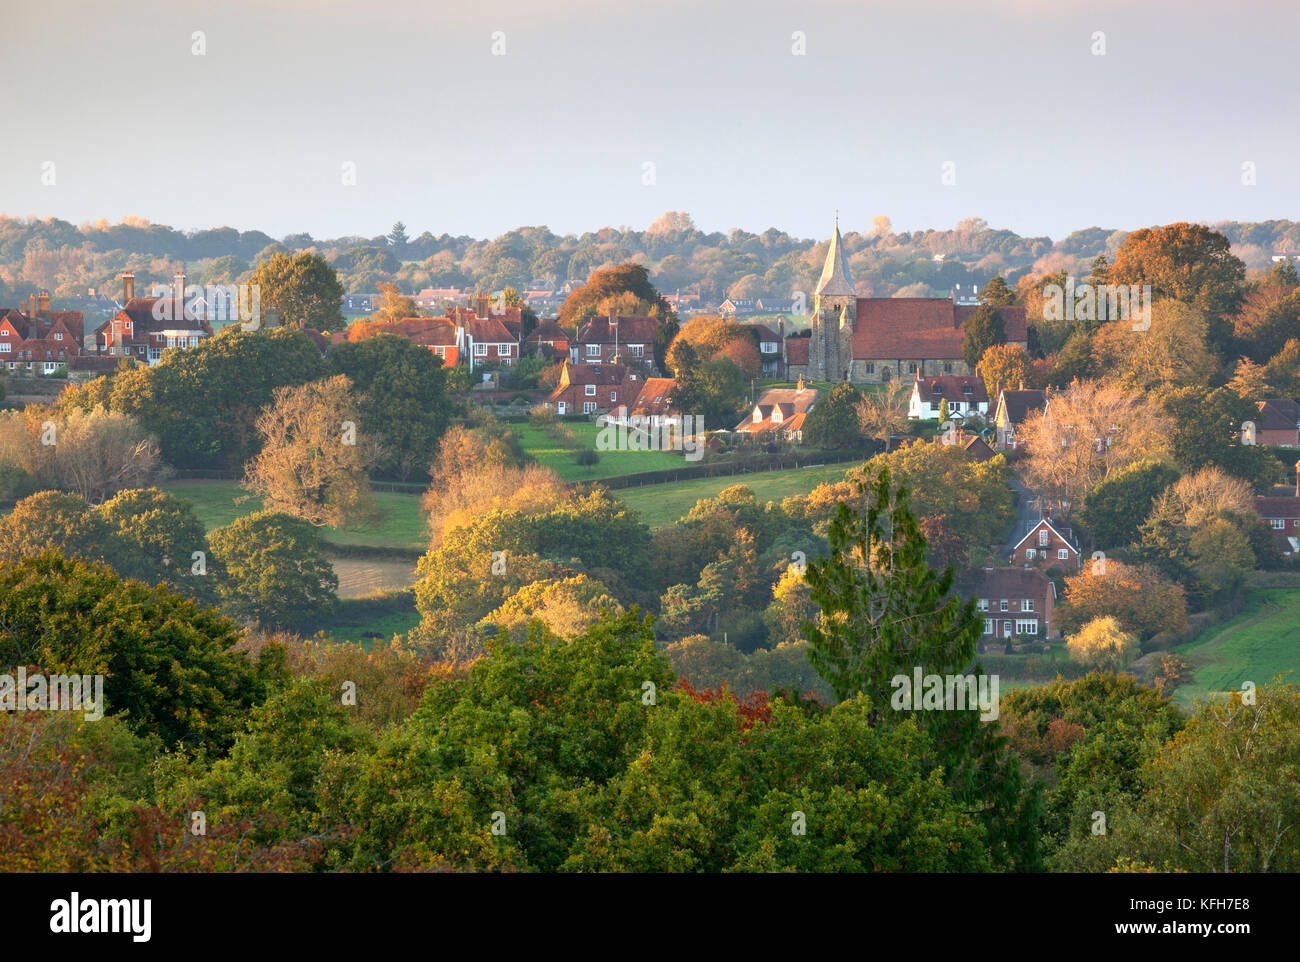 Blick über Dorf Burwash im Herbst Abendlicht, Burwash, East Sussex, England, Vereinigtes Königreich, Europa Stockfoto